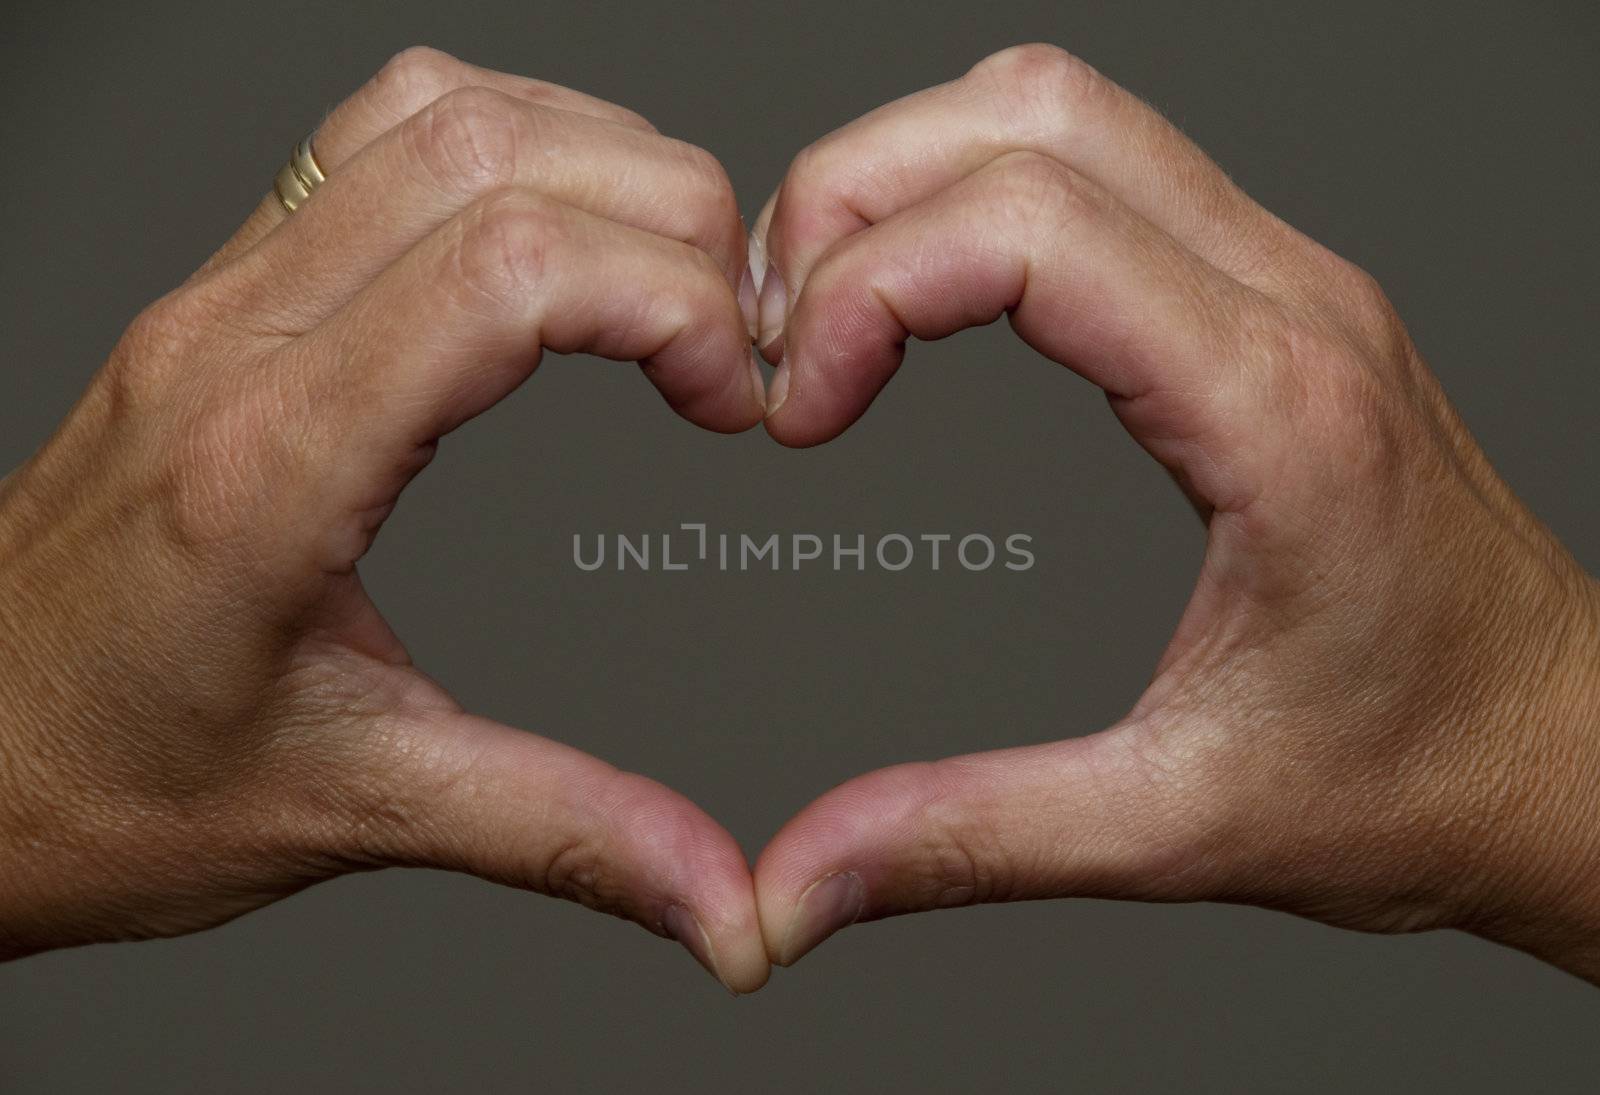 hands making a hart shape together